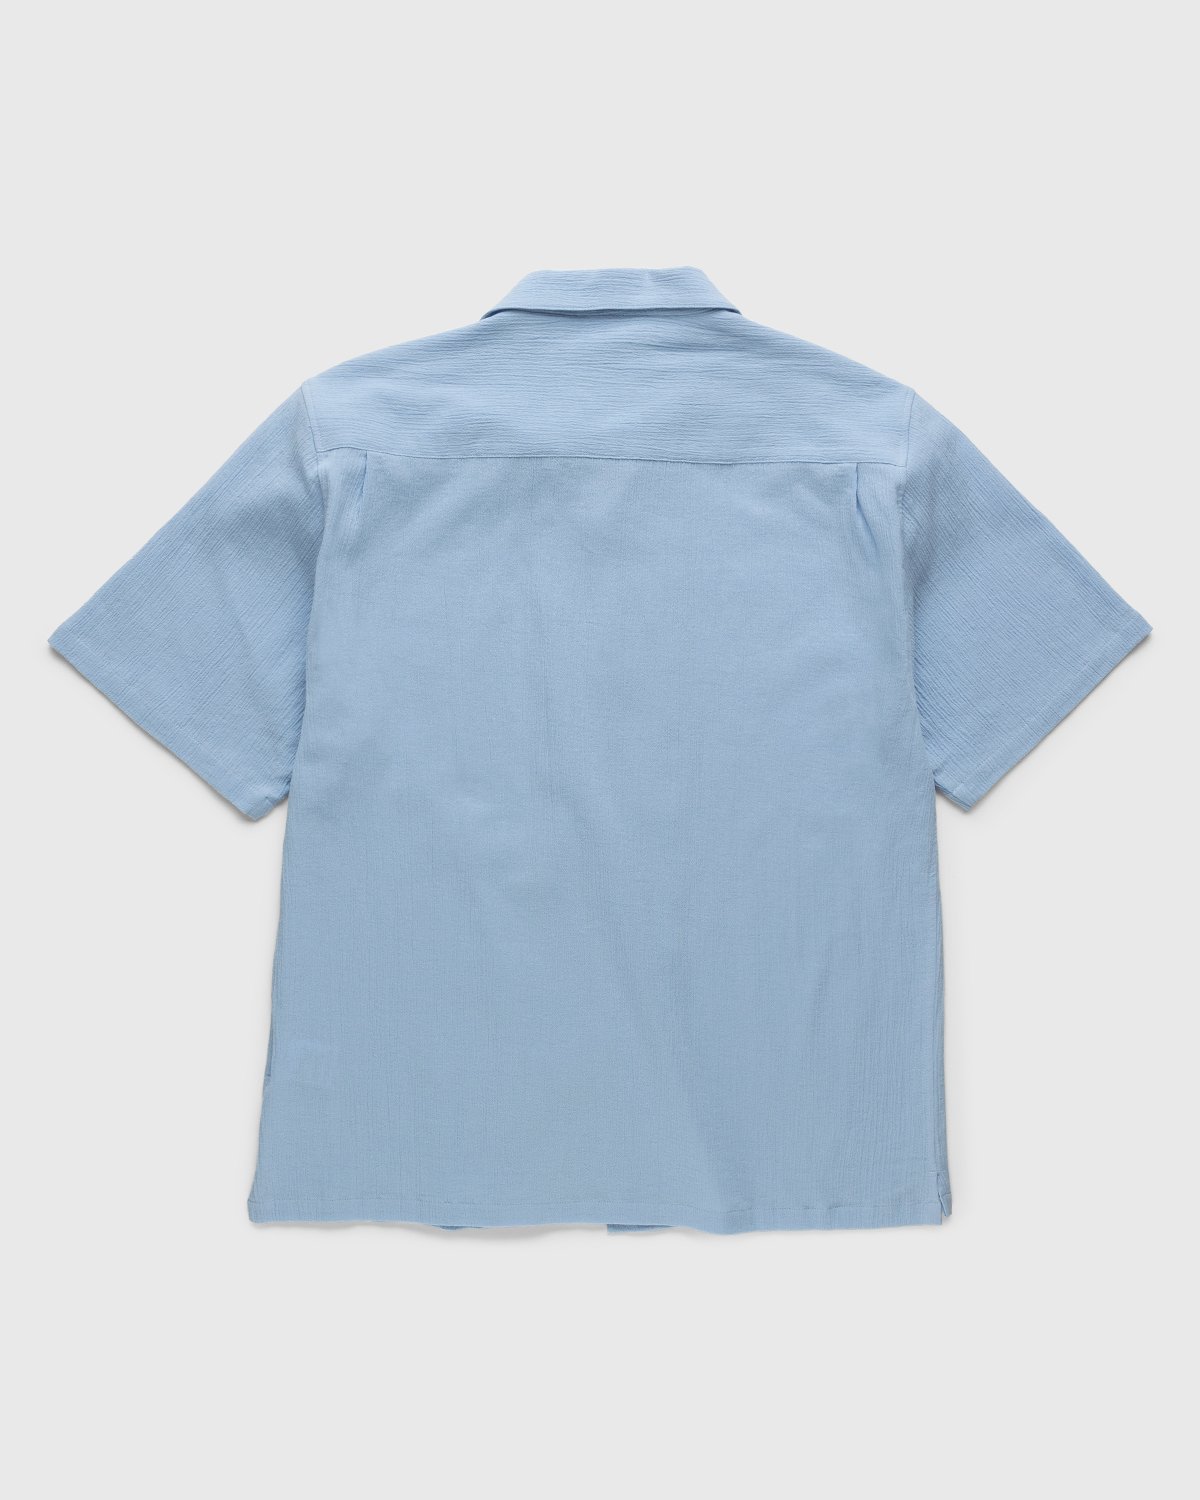 Highsnobiety - Crepe Short Sleeve Shirt Sky Blue - Clothing - Blue - Image 2